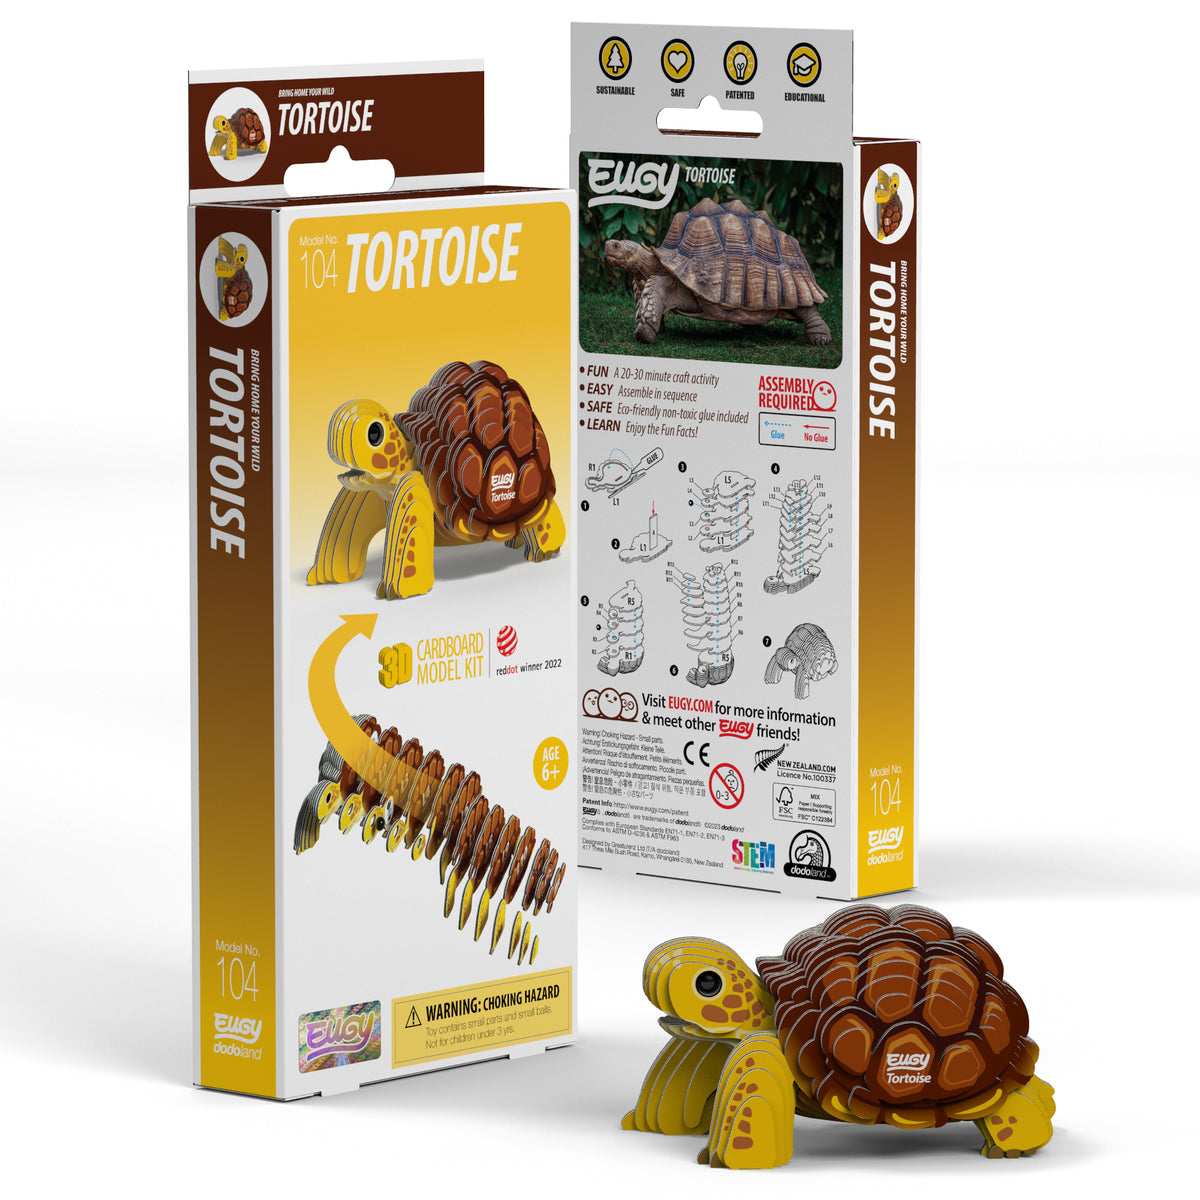 EUGY Tortoise 3D Puzzle — Safari Ltd Wholesale